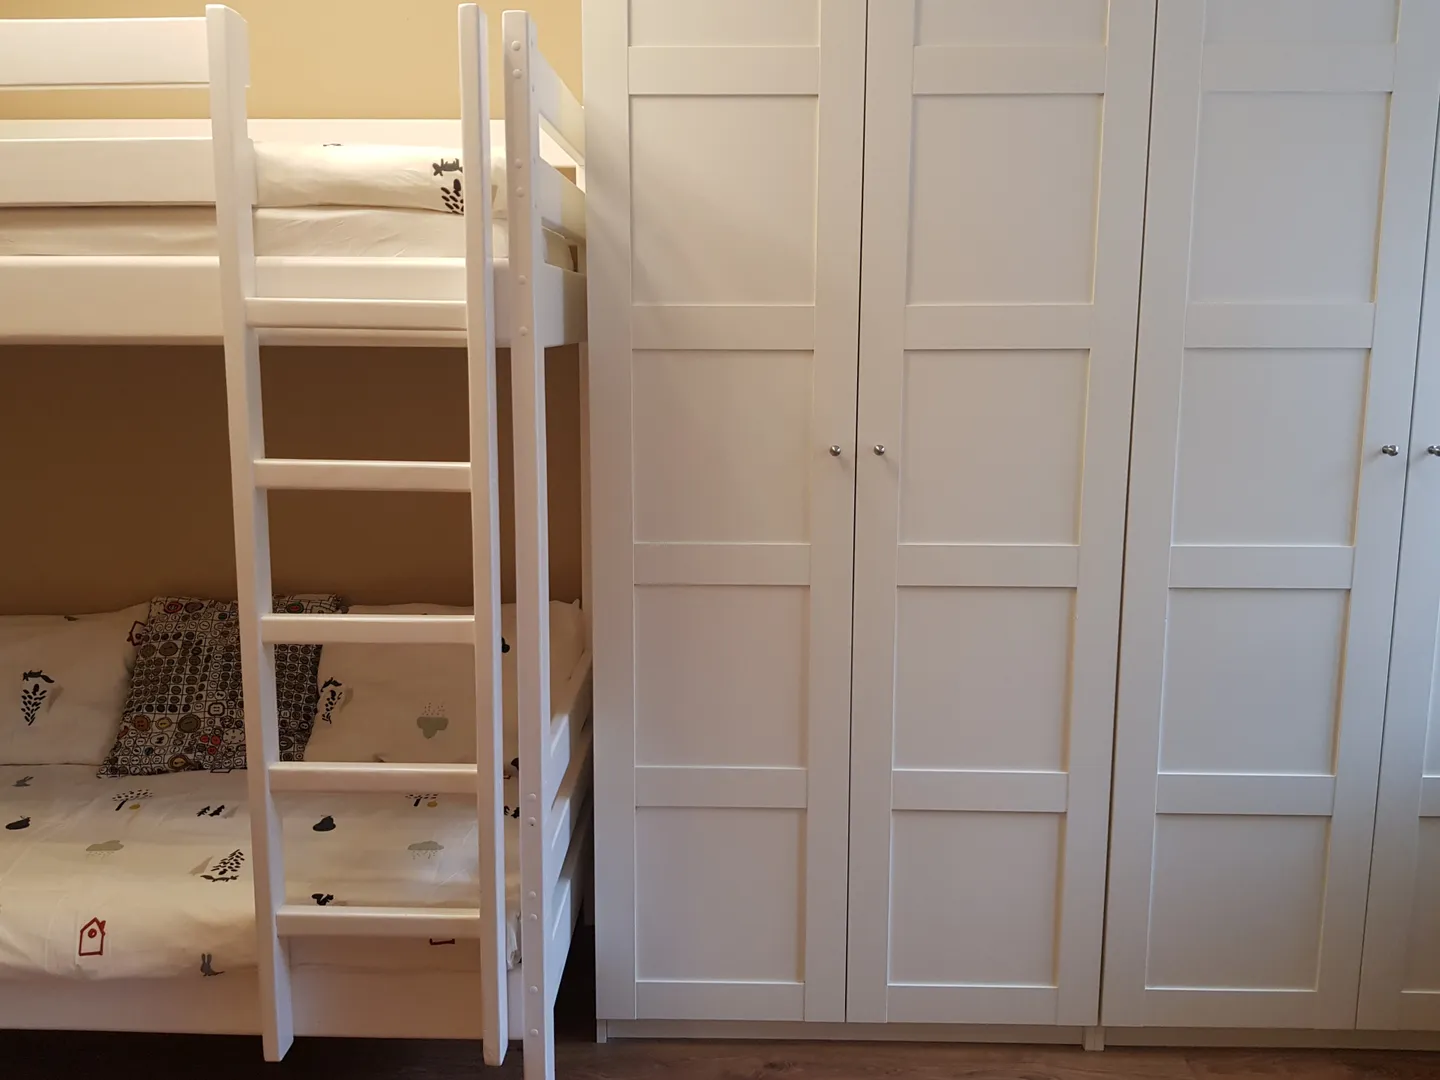 В спальне есть вместительный шкаф с плечиками для одежды и детская двухъярусная кровать